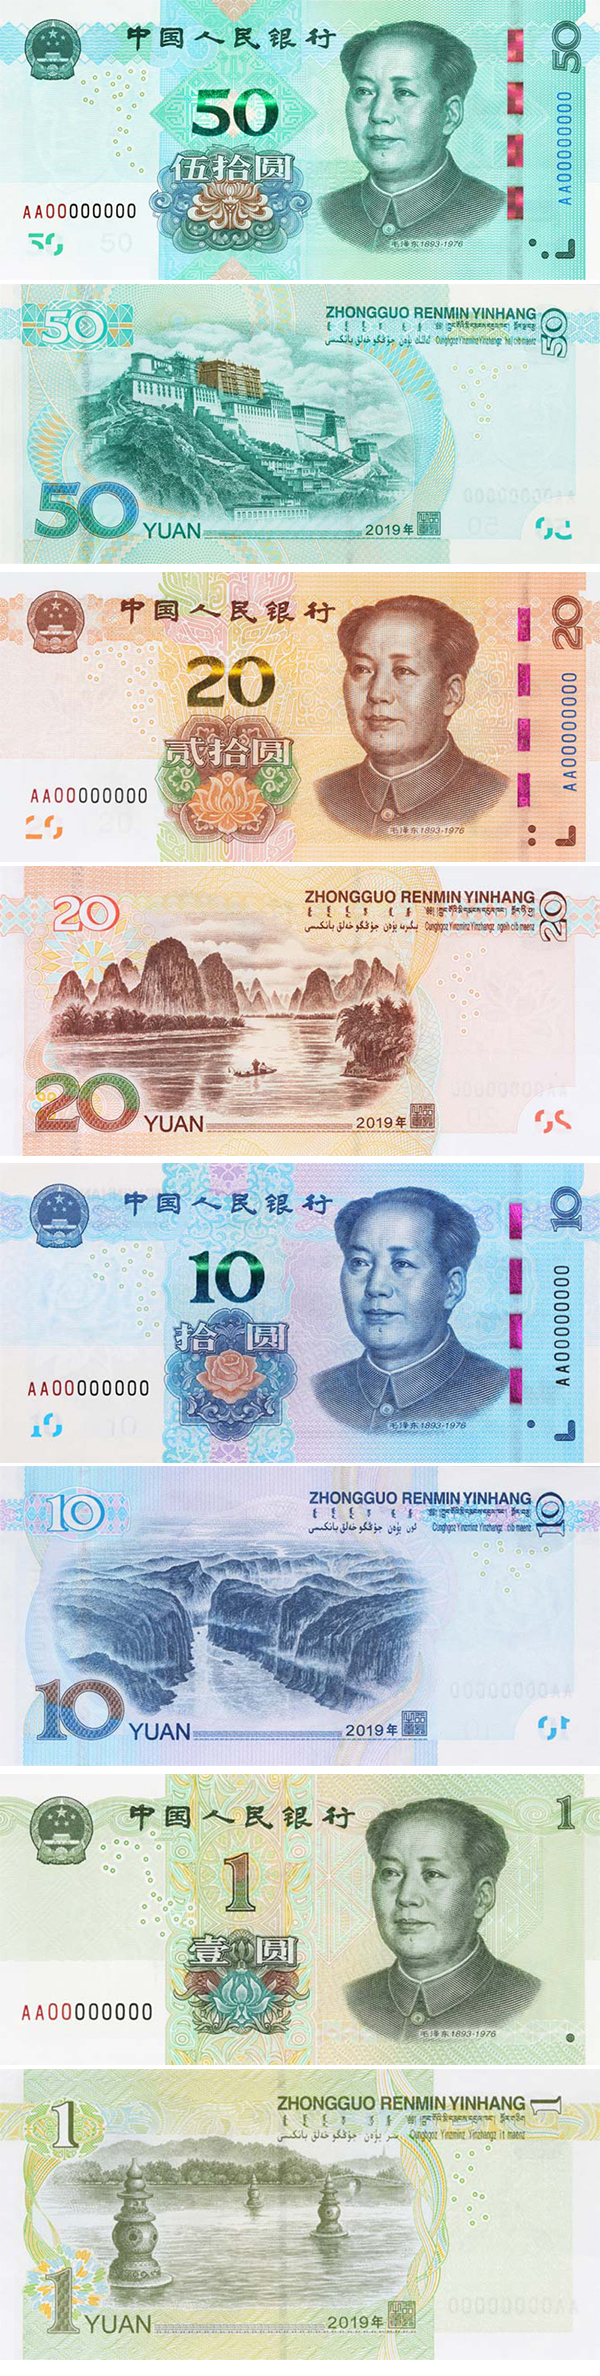 新版第五套人民币将发行 看看有啥新变化